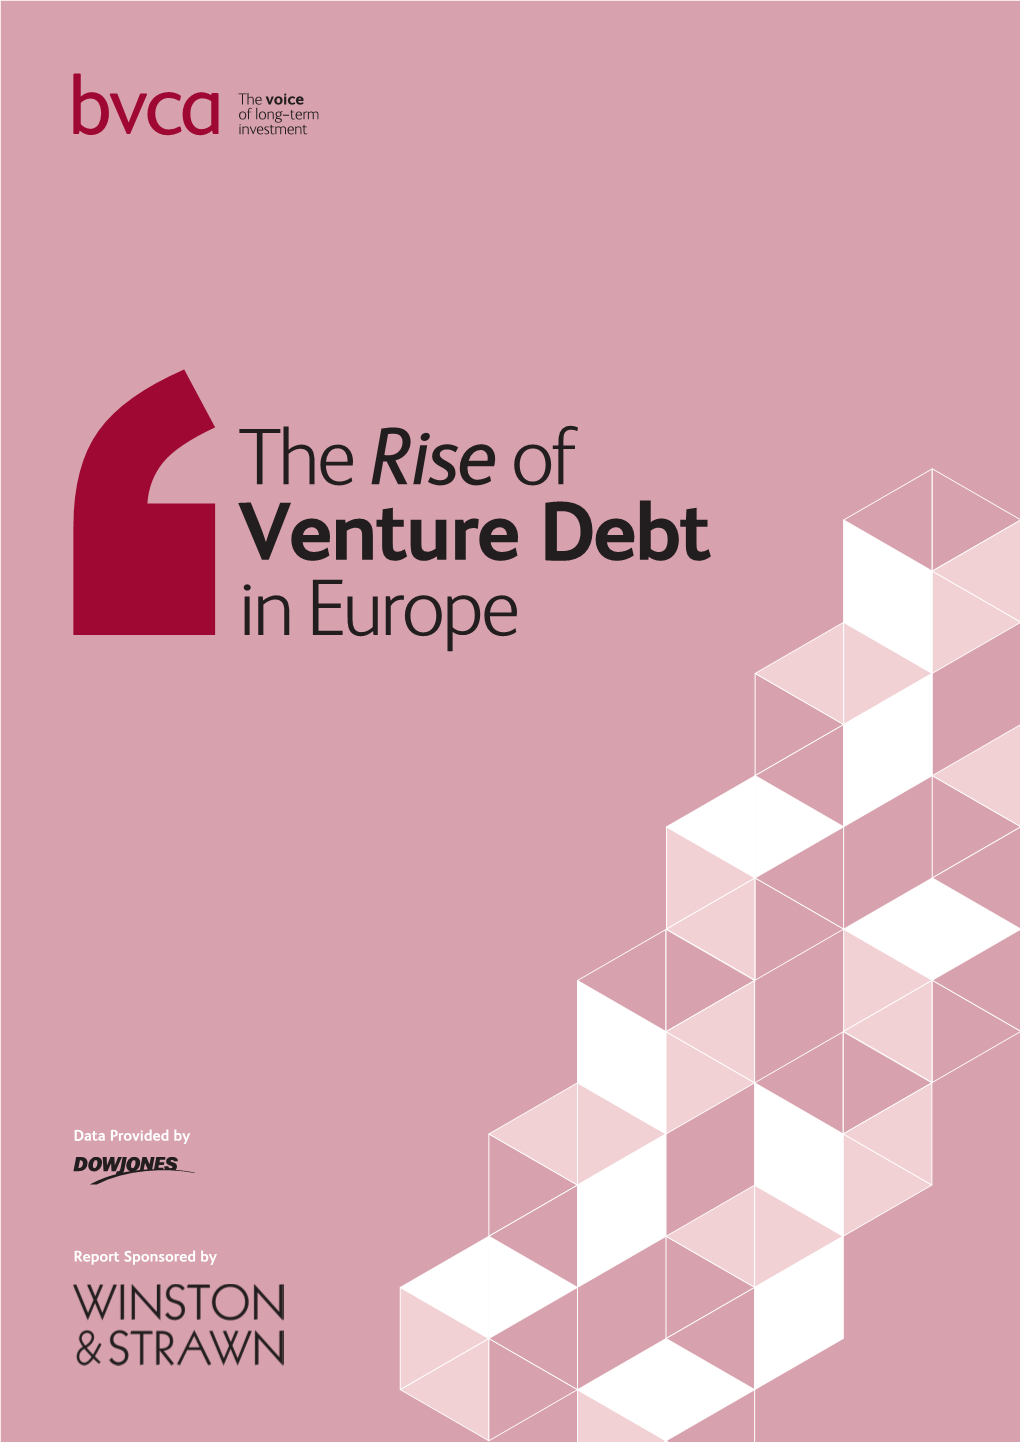 The Riseof Venture Debt in Europe